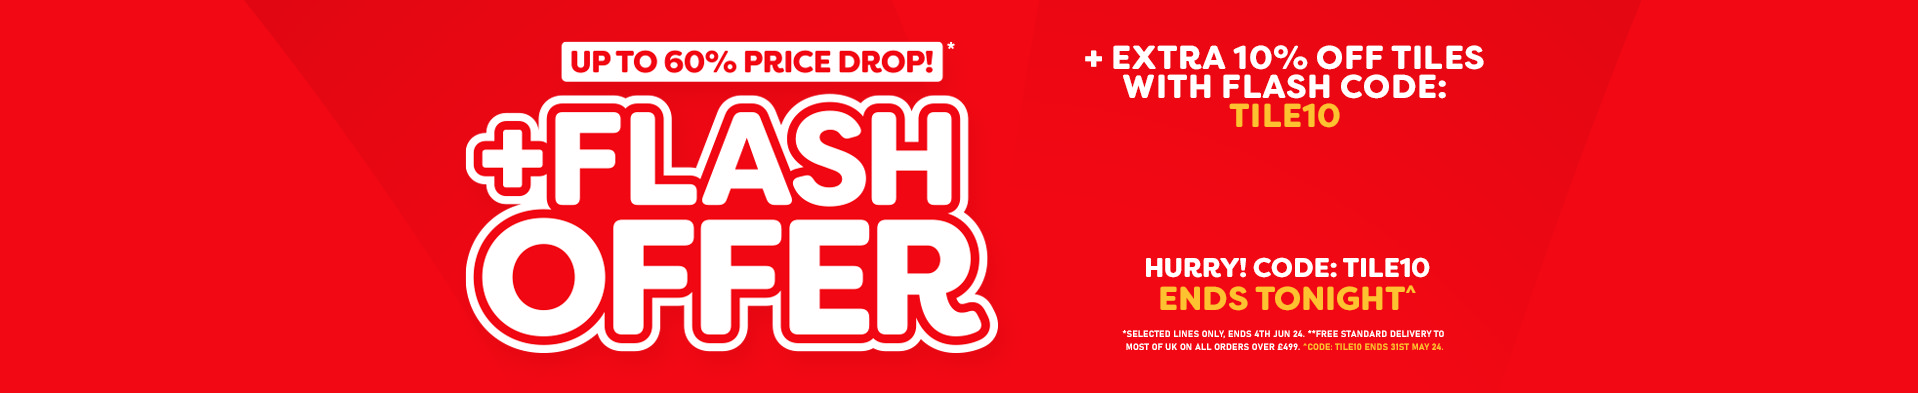 Price Drop Sale - Flash Offer TILE10 - Tonight